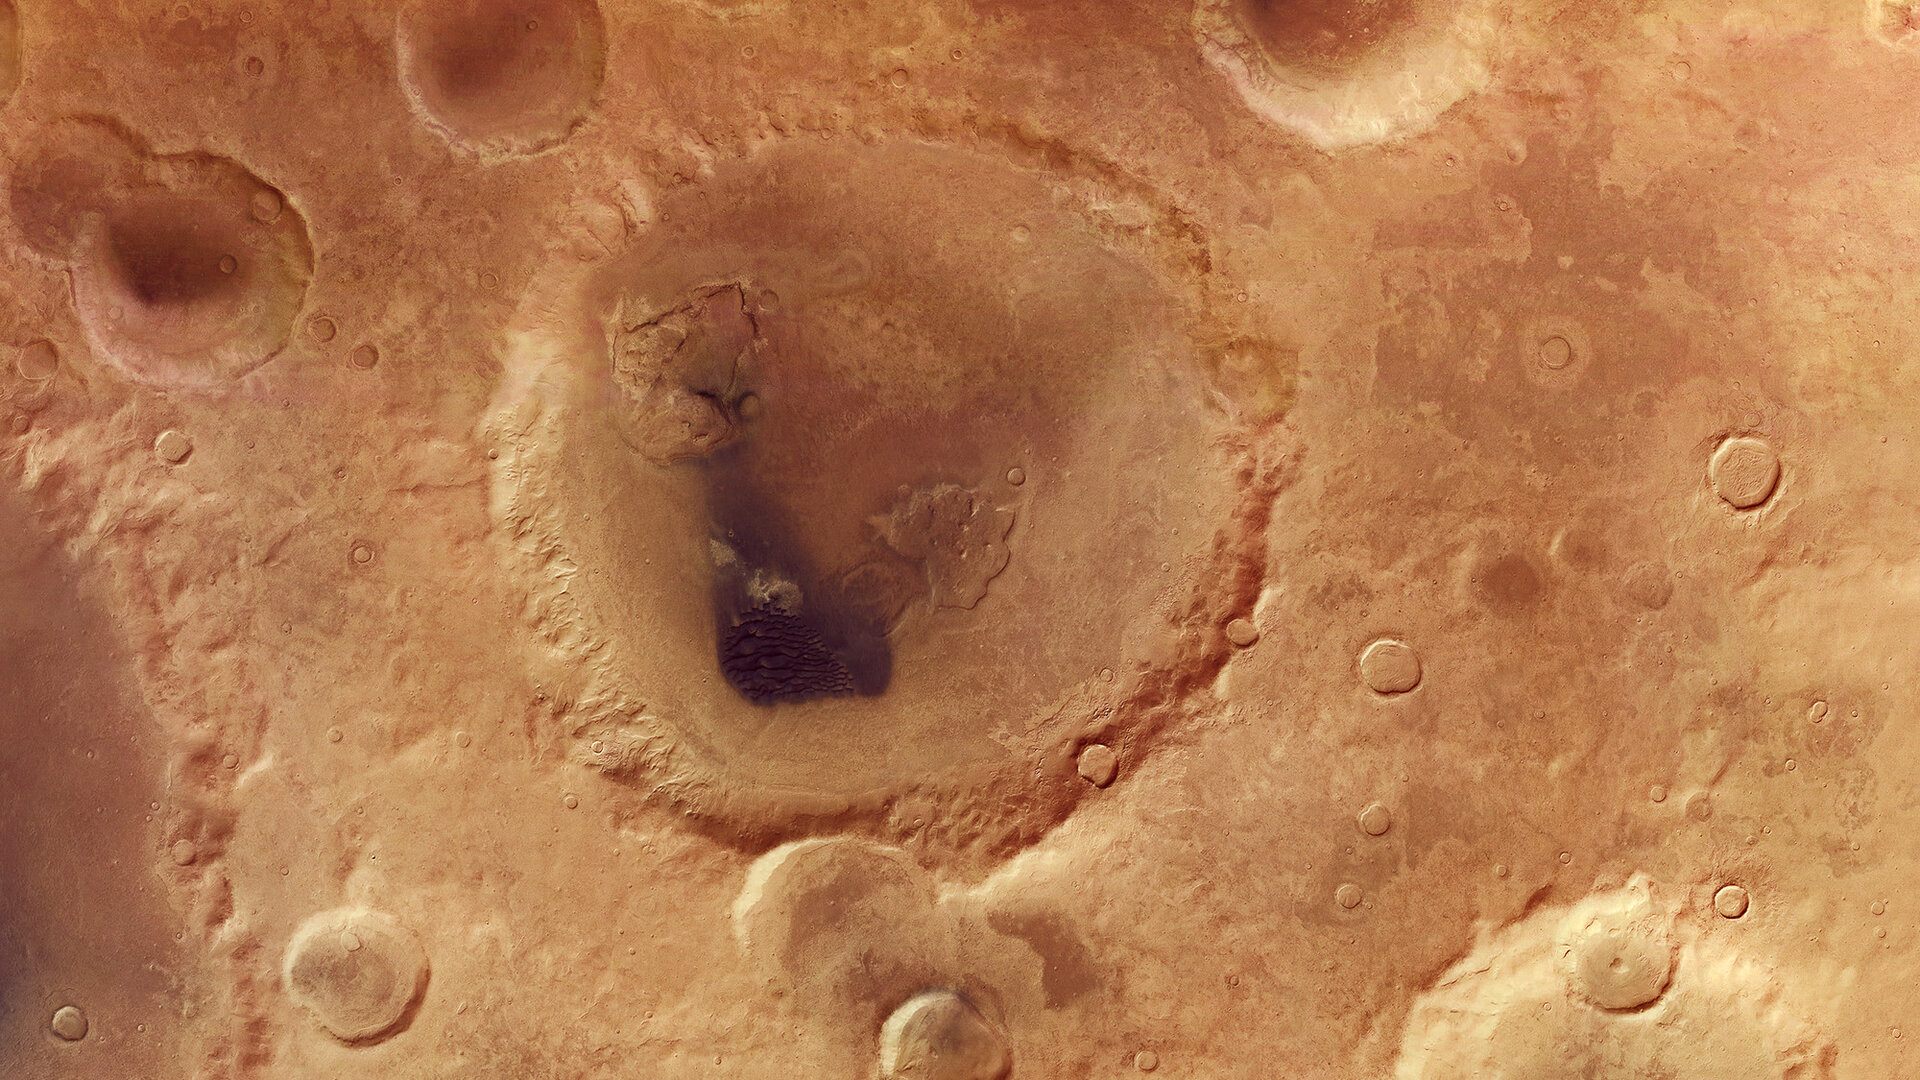 Cratera Neukum